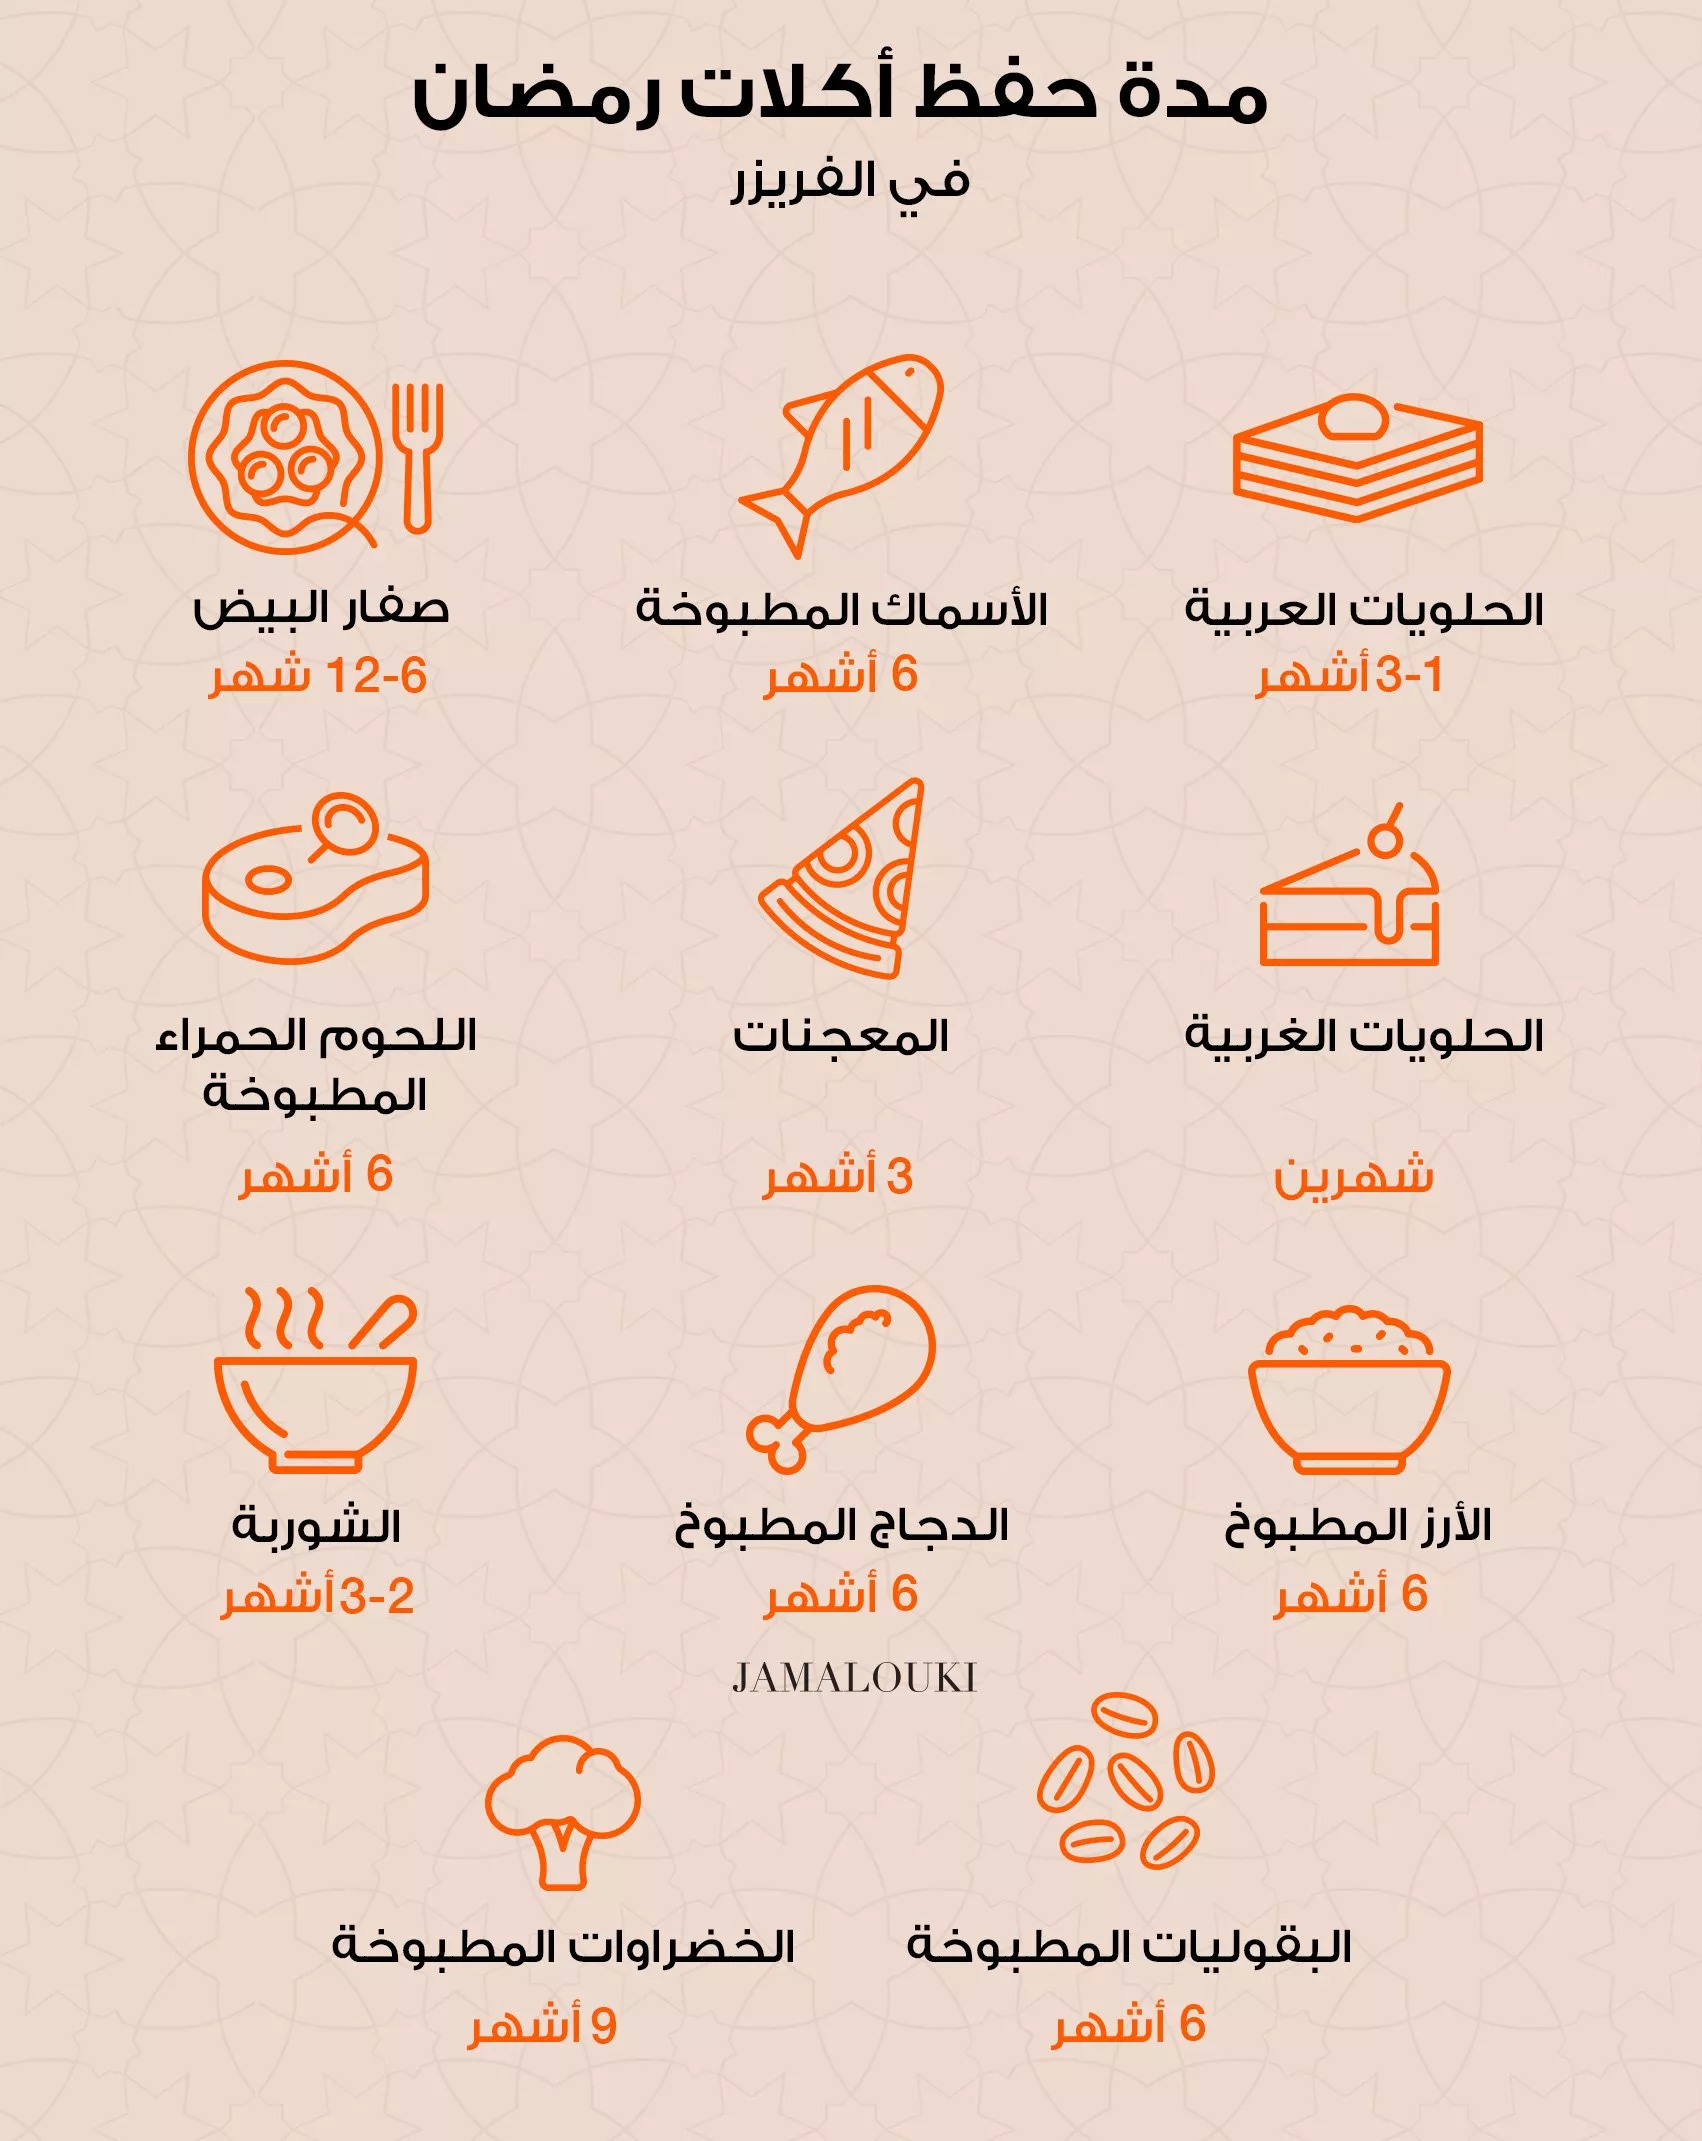 ما هي مدة حفظ أكلات رمضان المطبوخة في كل من الثلاجة والفريزر؟